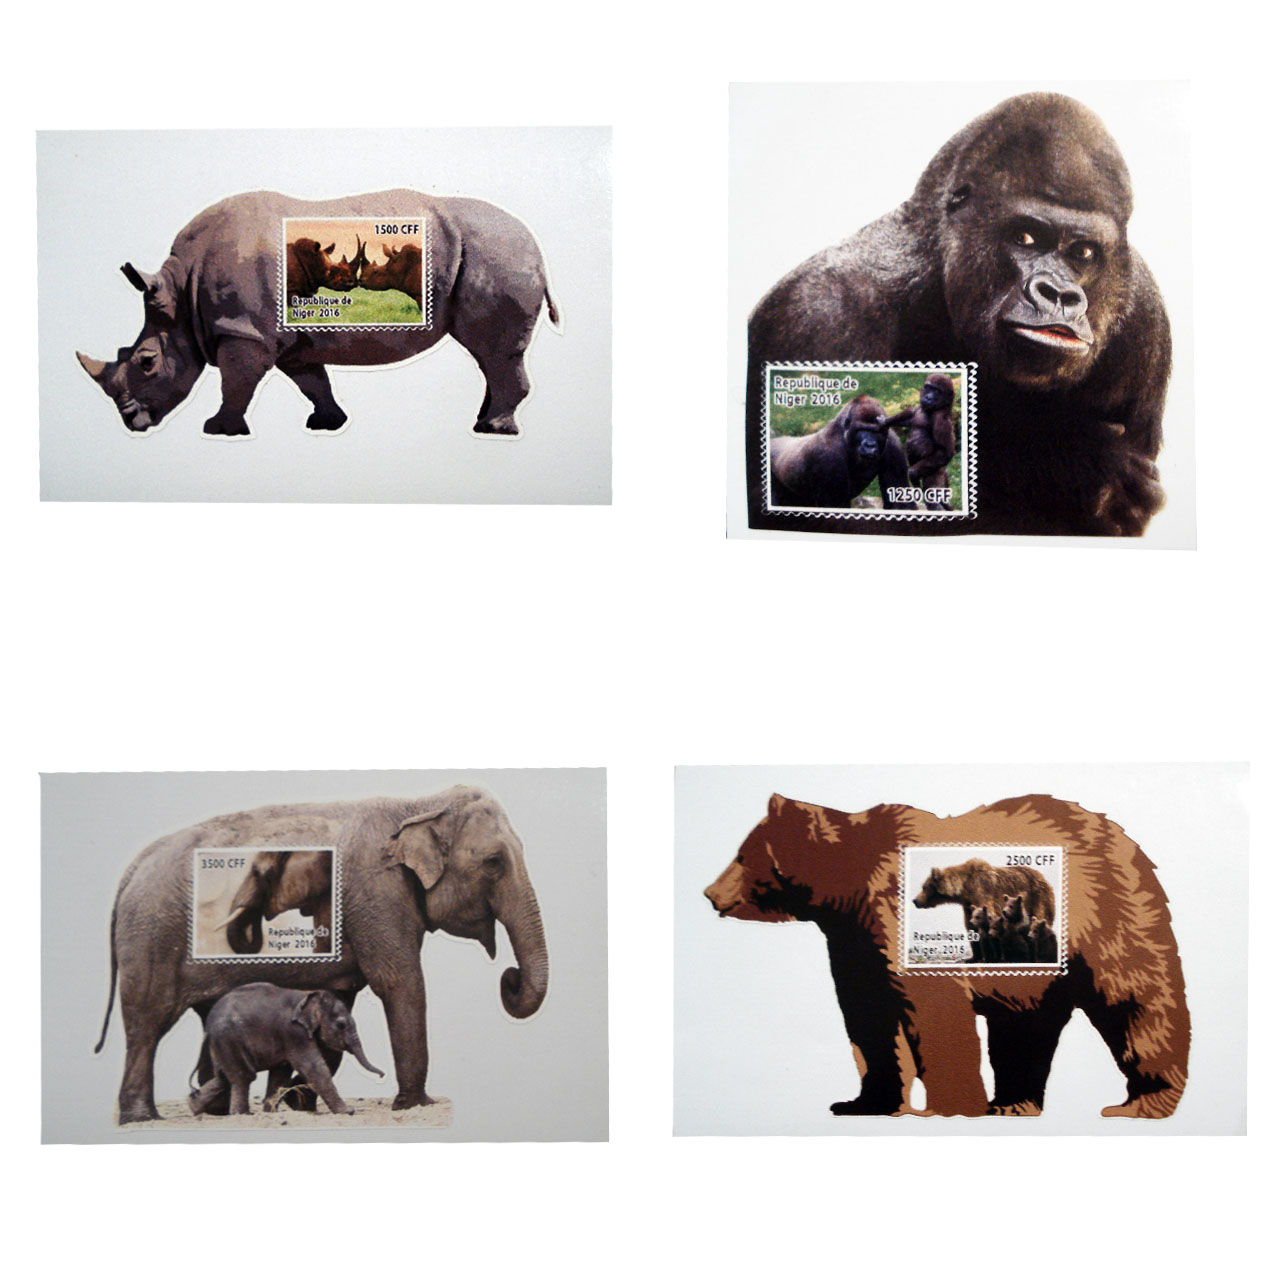 تمبر یادگاری سری حیوانات مدل Niger2016 مجموعه 4 عددی